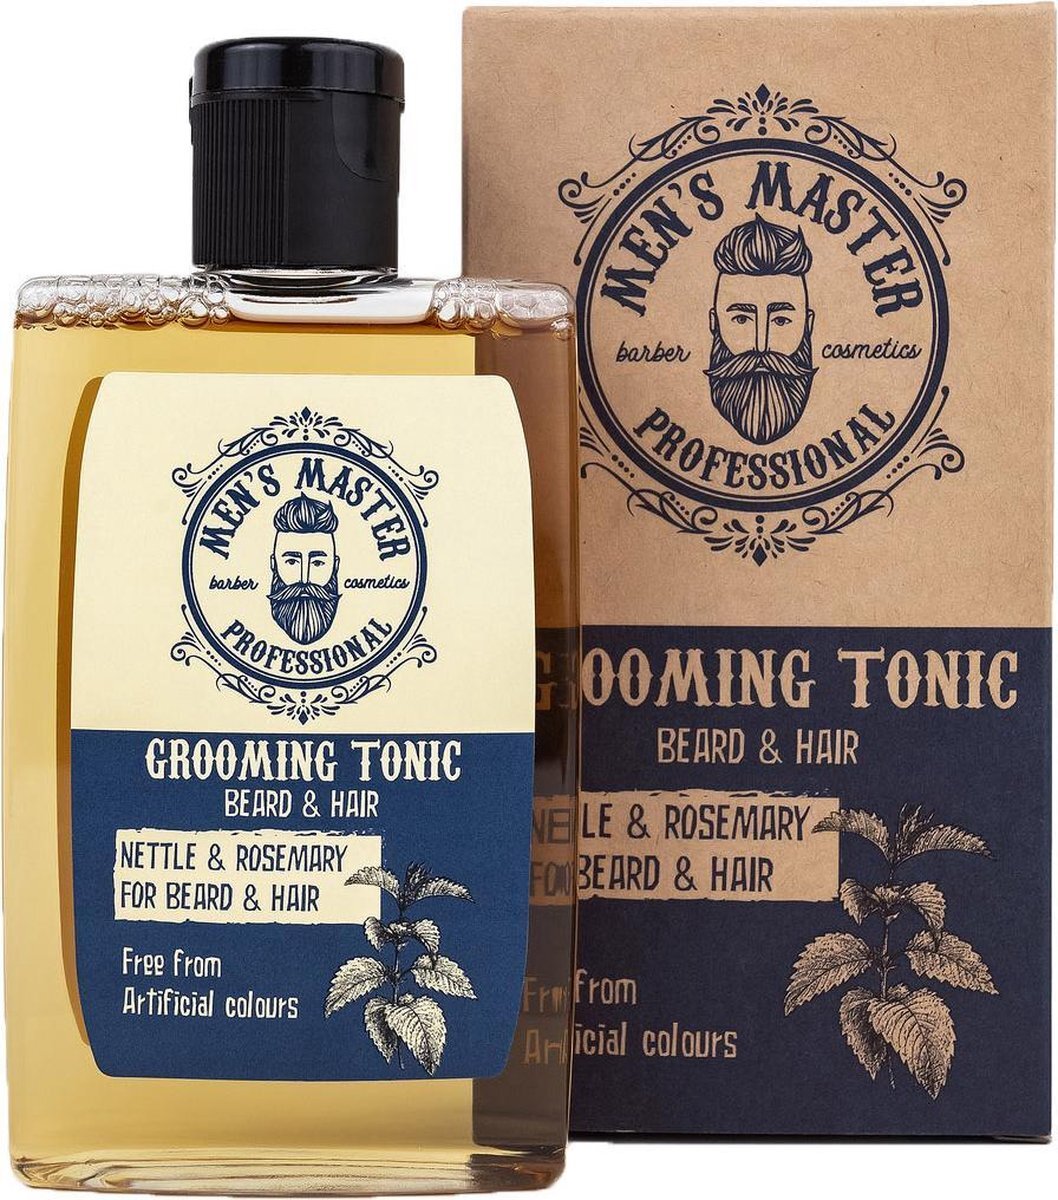 Men's Master Grooming Tonic for Hair & Beard - Volume & Textuur voor Haar & Baard - 120ML